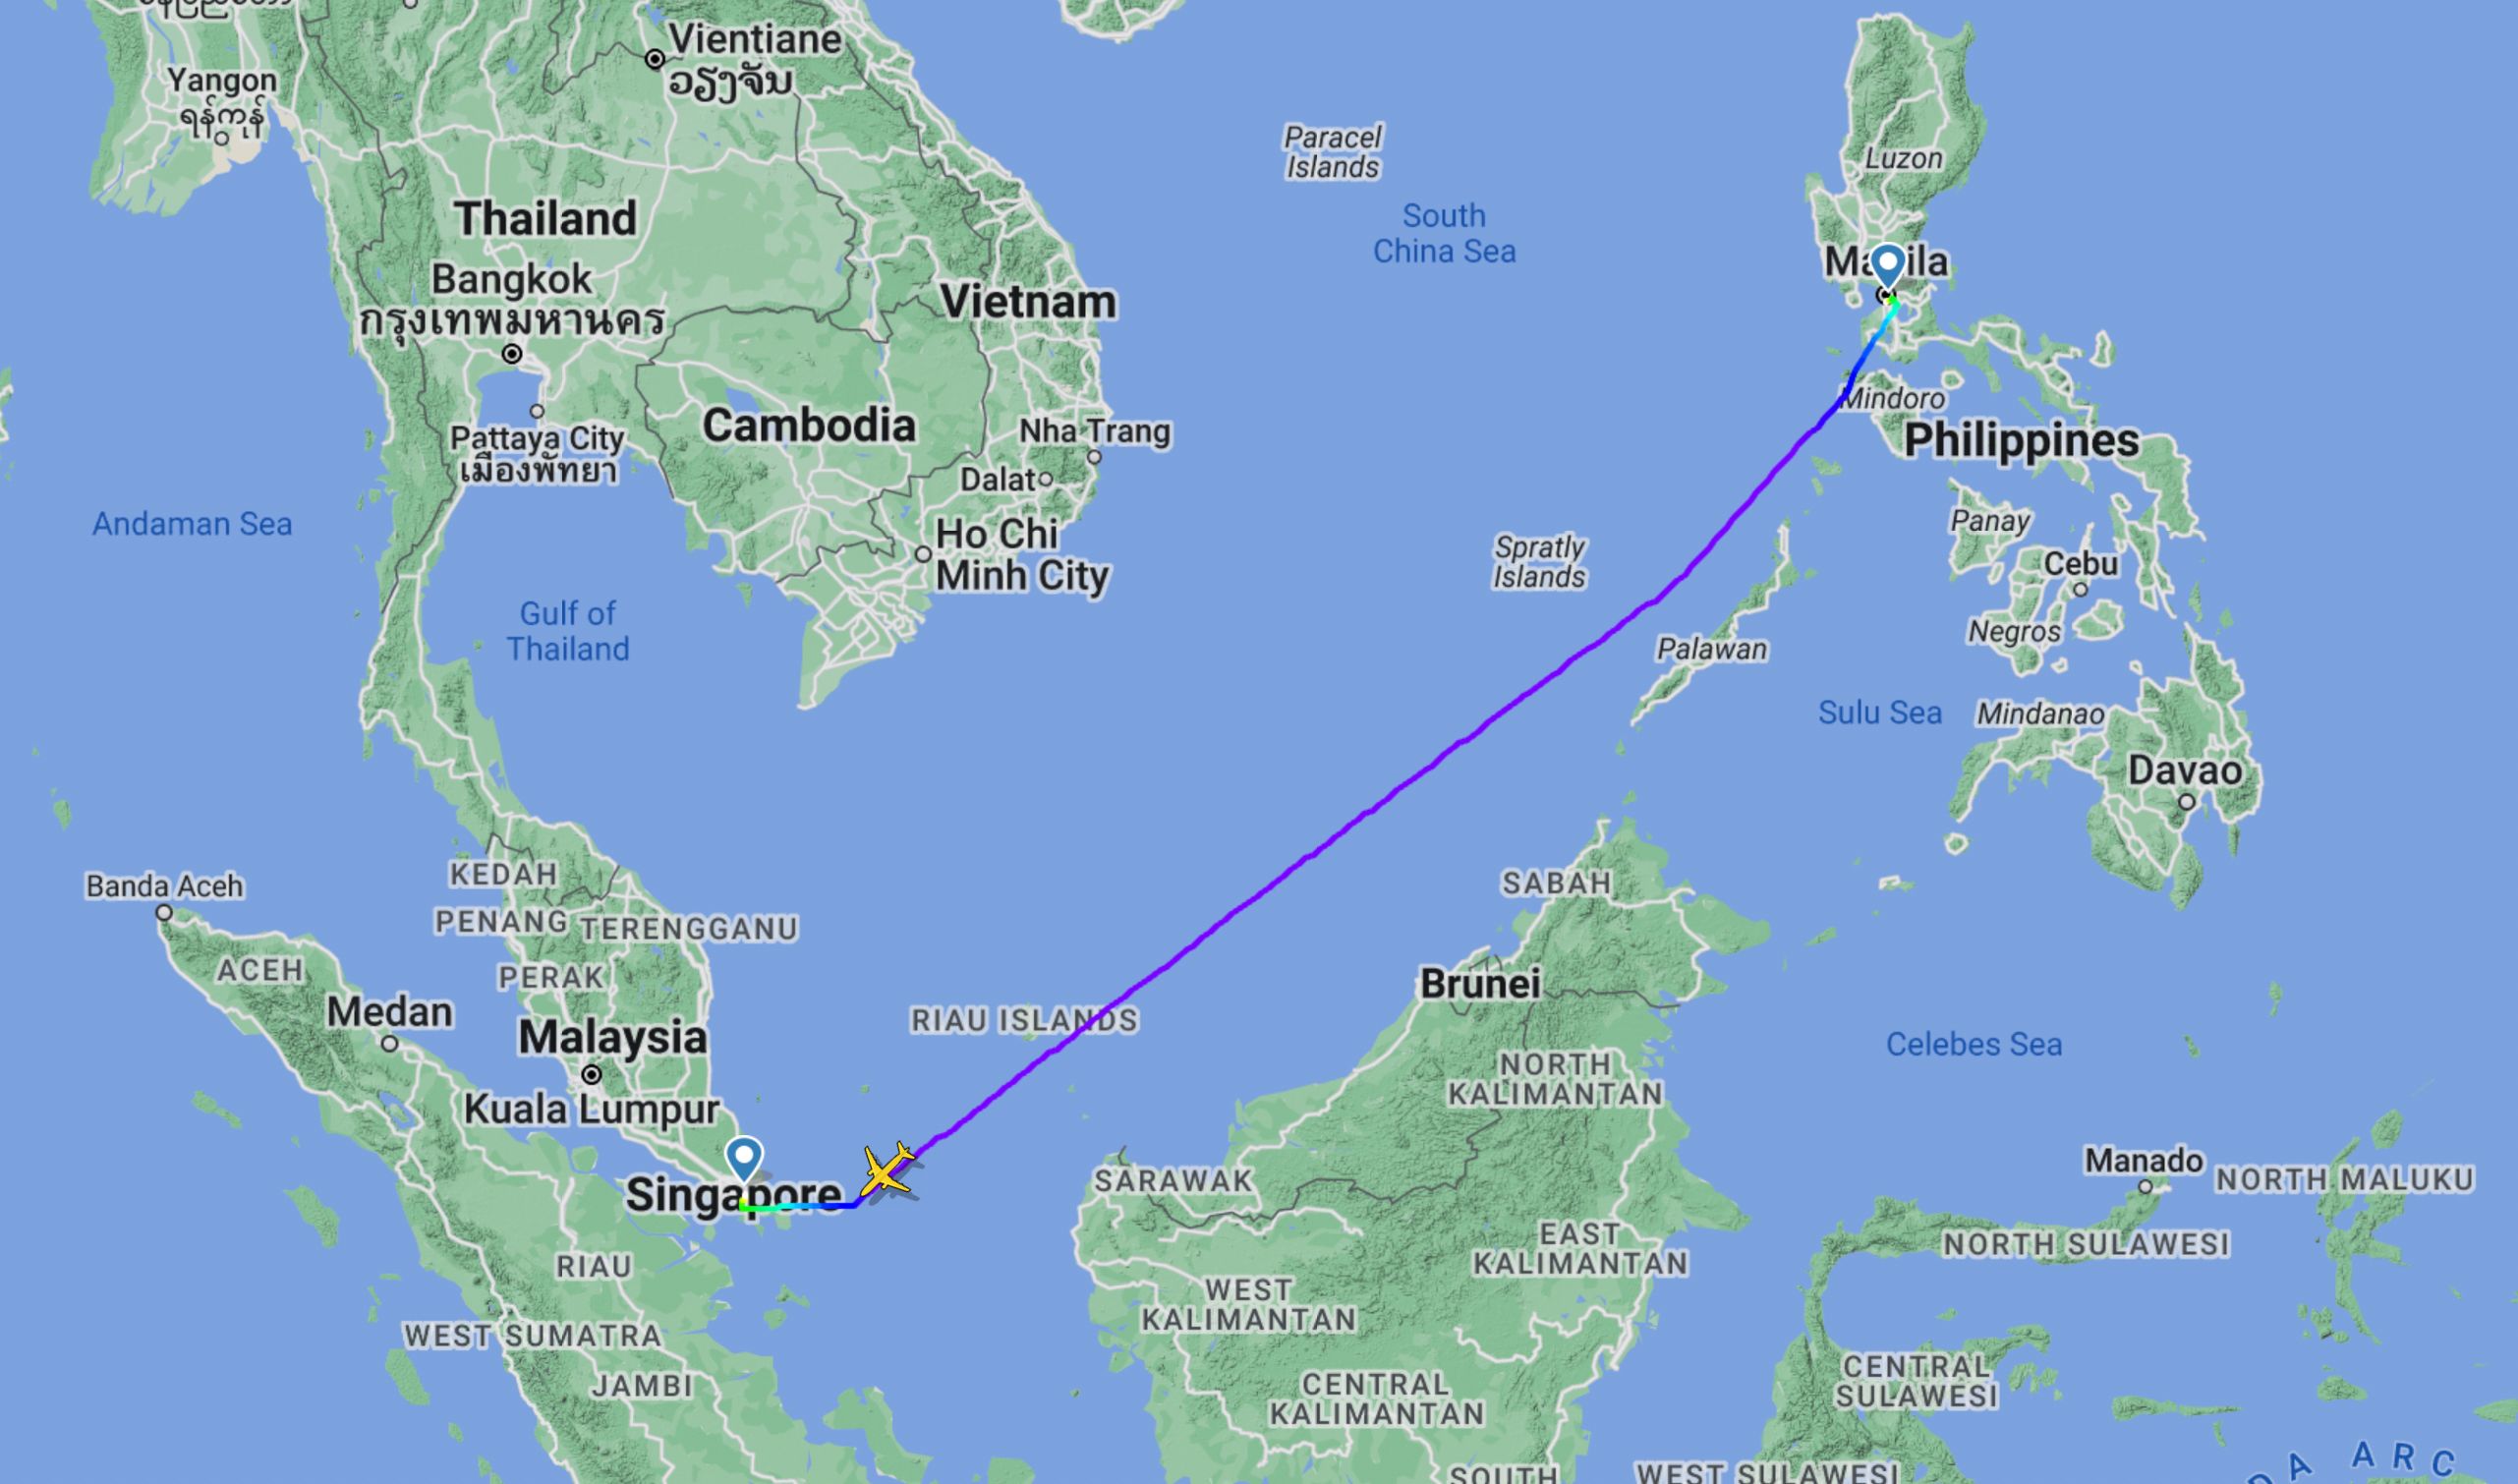 Jetstar 3K766 Manilla-Singapore